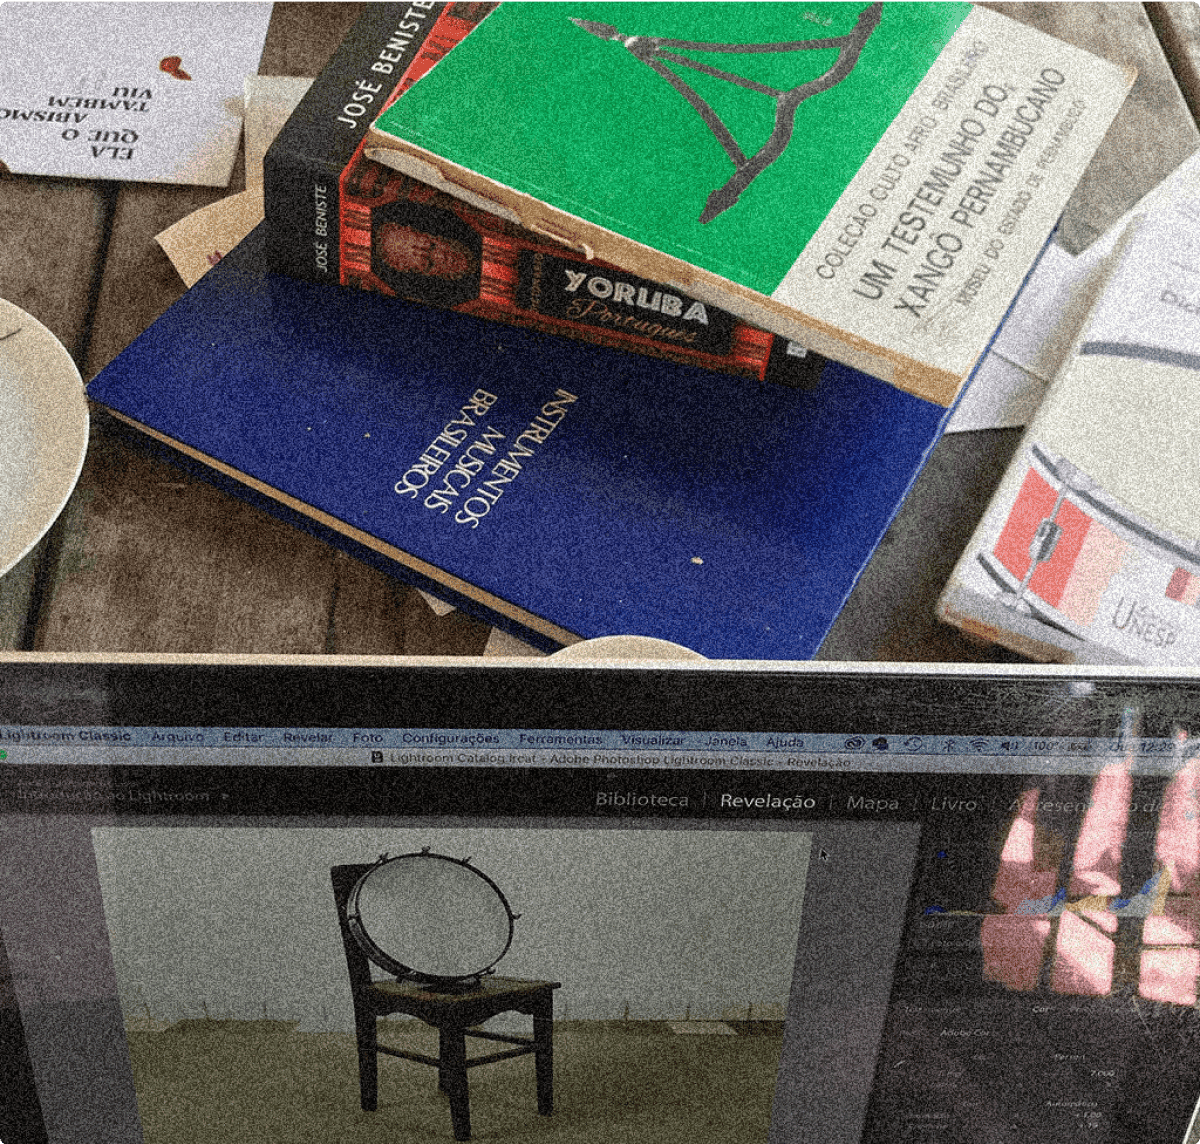 Notebook e livros em cima de uma mesa